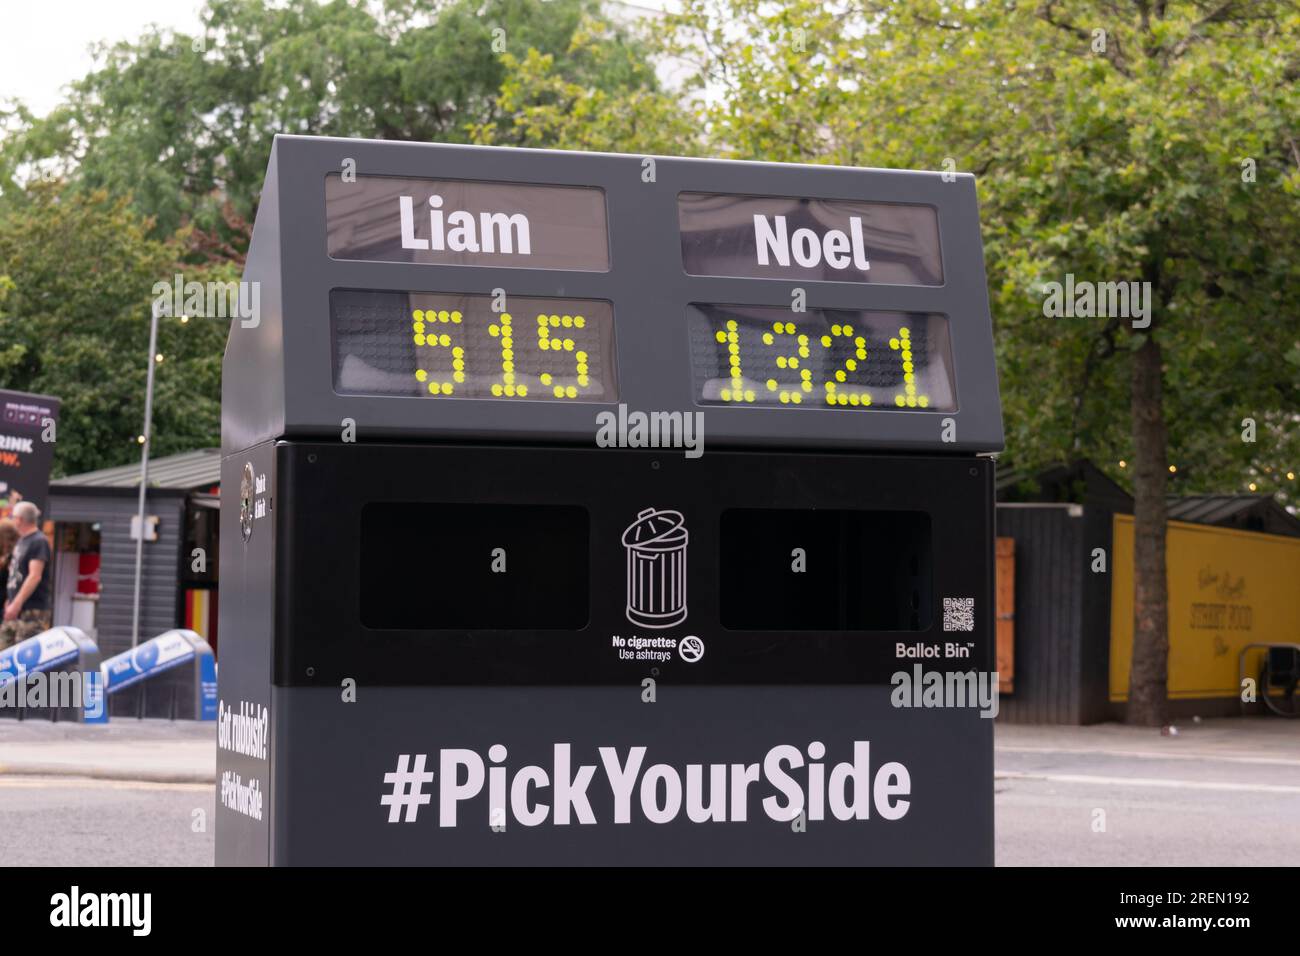 Papeletas con el hashtag de Liam of Noel Choice PickYourSide. Manchester Reino Unido Foto de stock